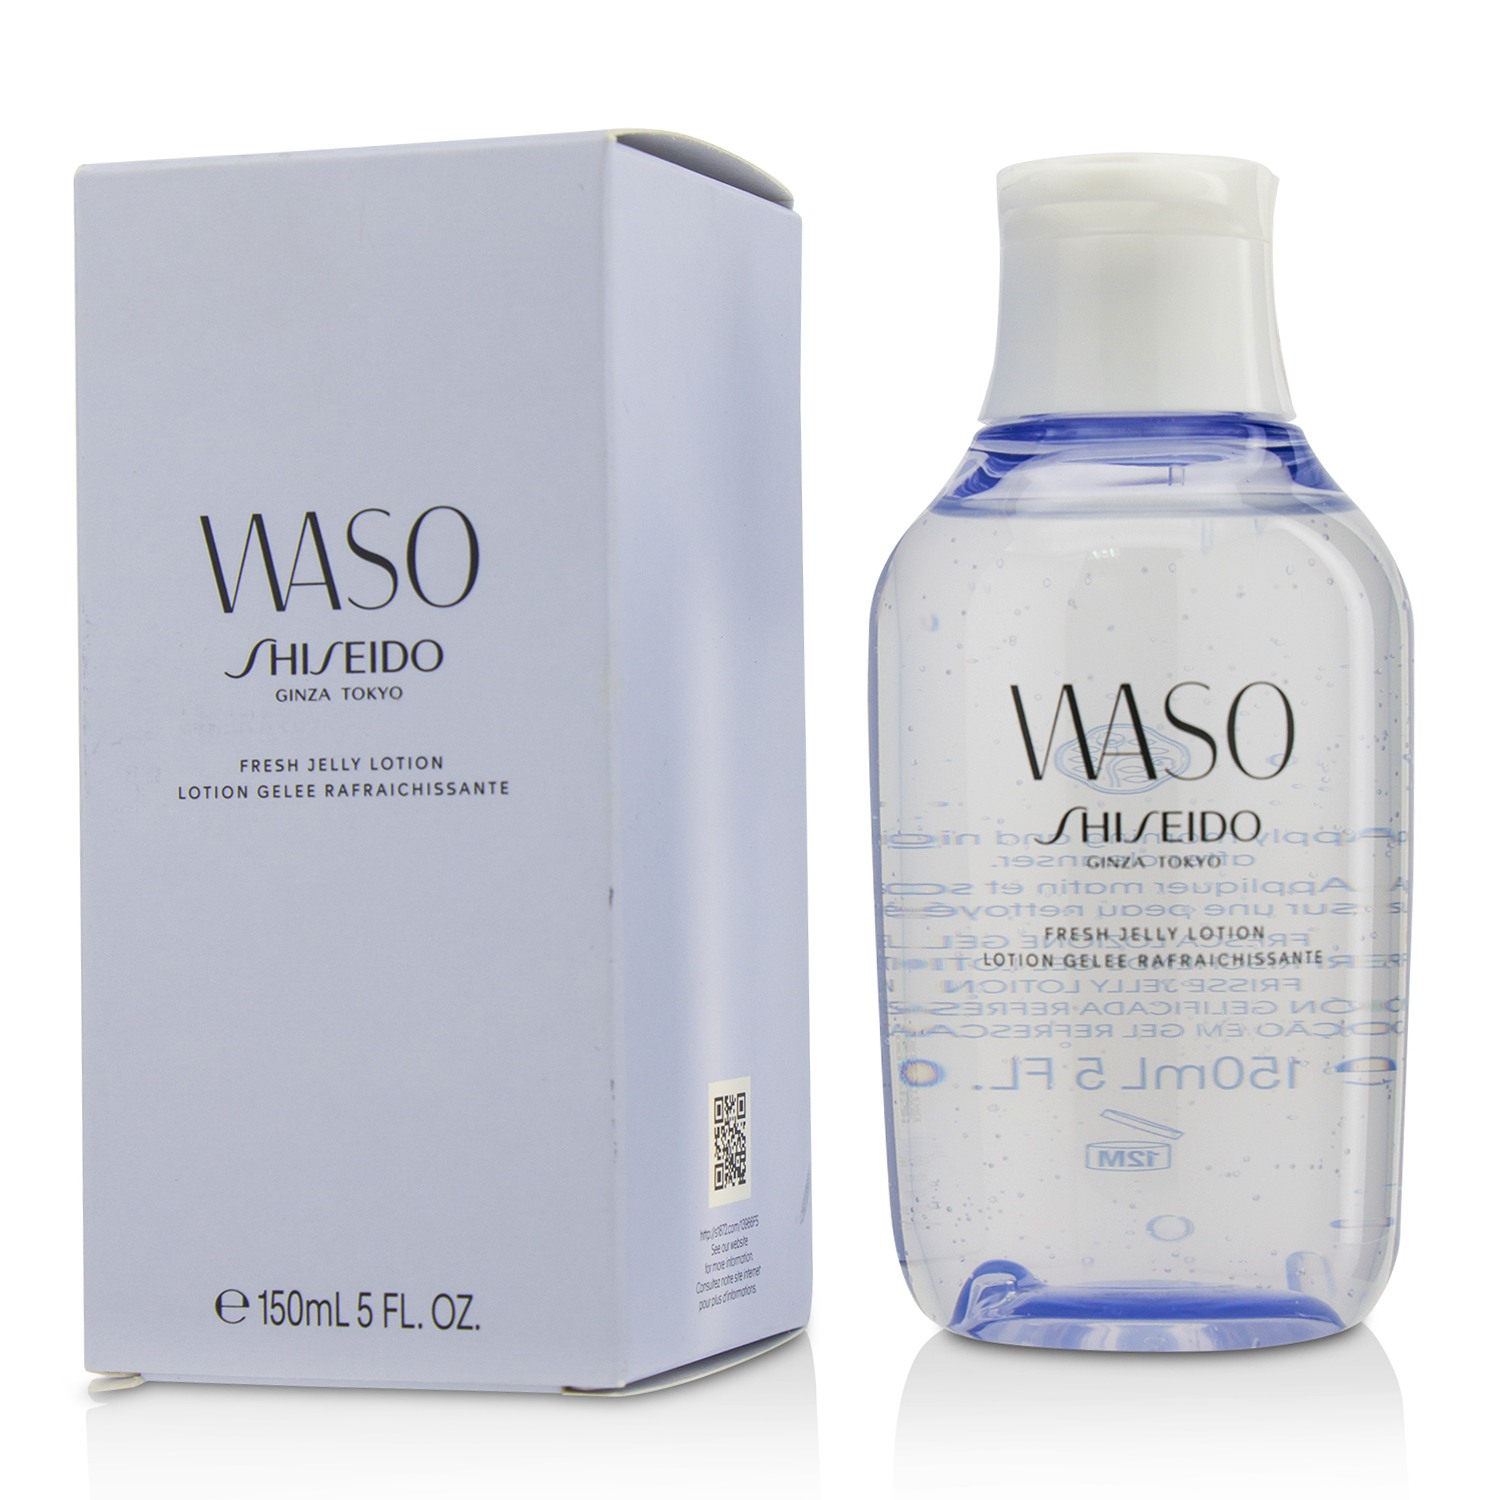 Waso Fresh Jelly Lotion Shiseido Image